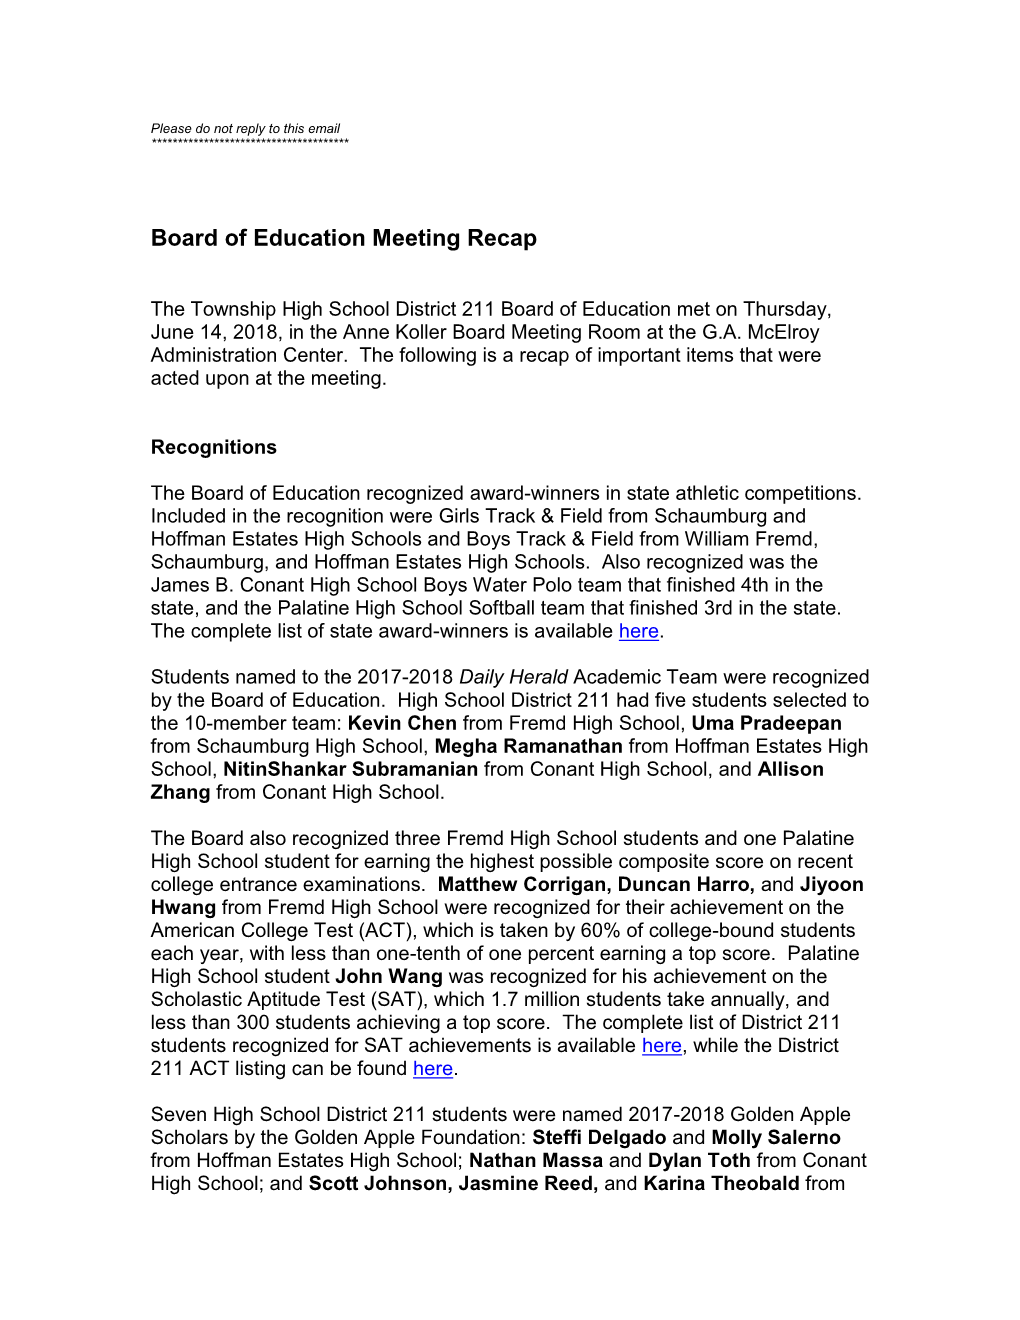 Board of Education Meeting Recap 6-14-2018